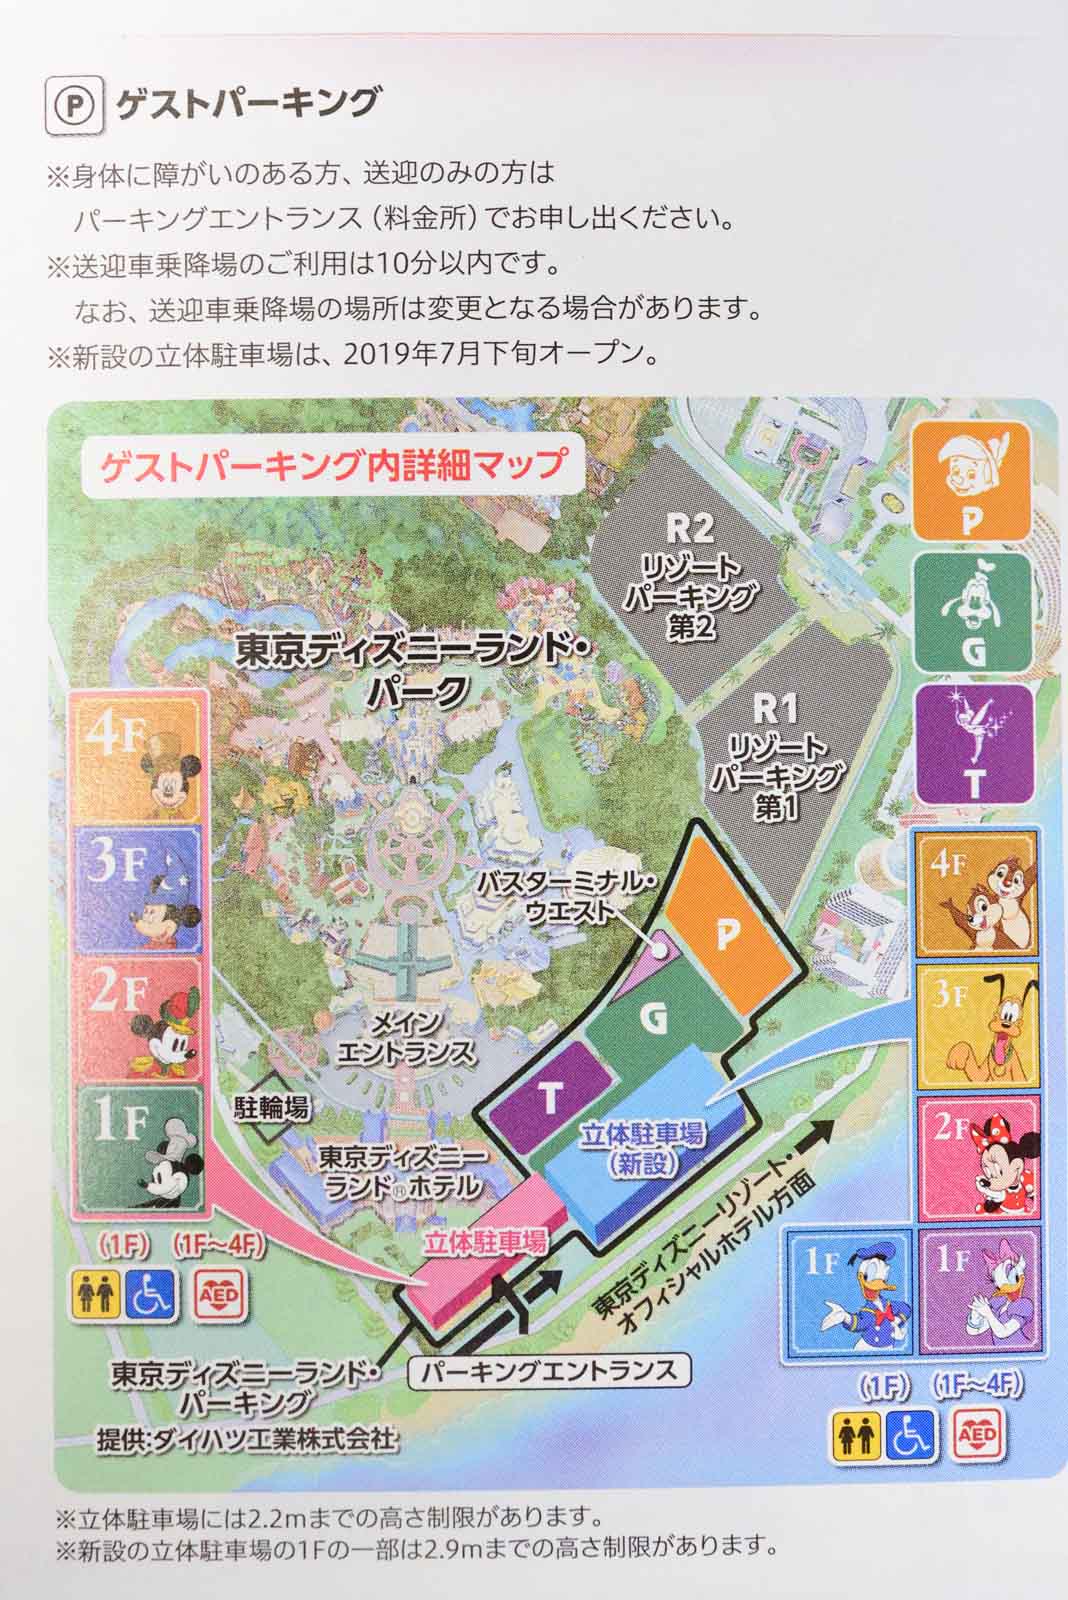 東京ディズニーランドの新立体駐車場が 19年7月下旬オープンに Disney Colors Blog